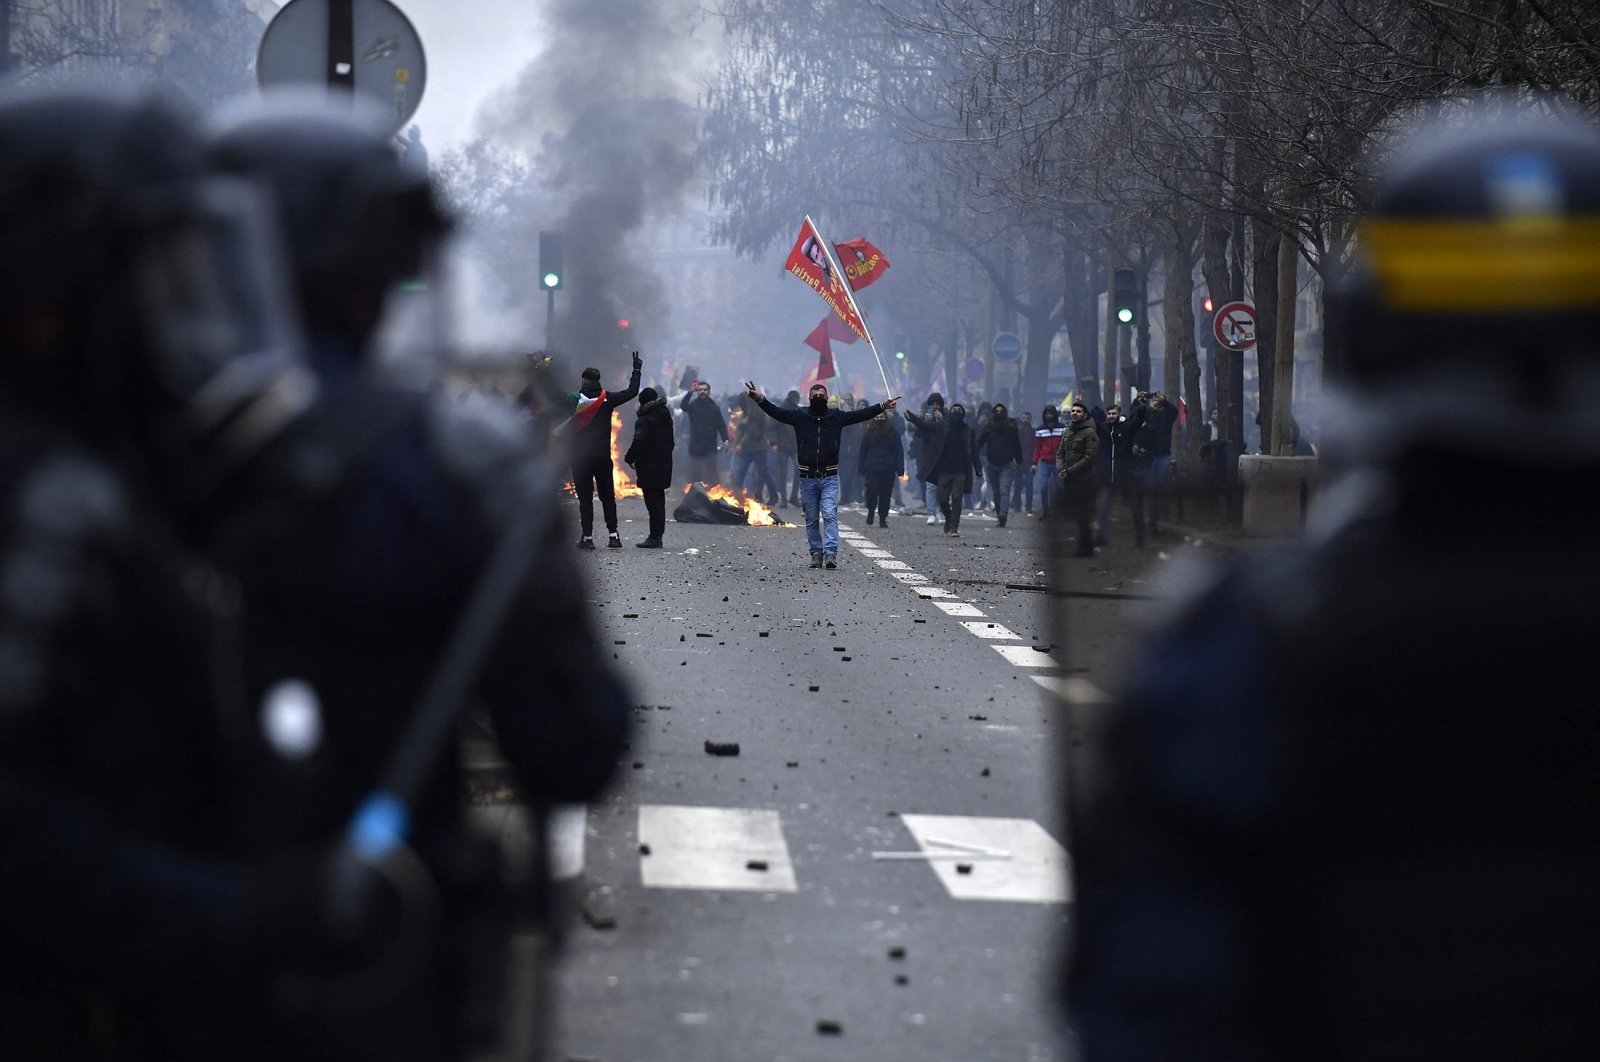 PKK terrorist group supporters face riot police as clashes erupt, at the Place de la Republique, in Paris, France, Dec. 24, 2022. (AFP Photo)